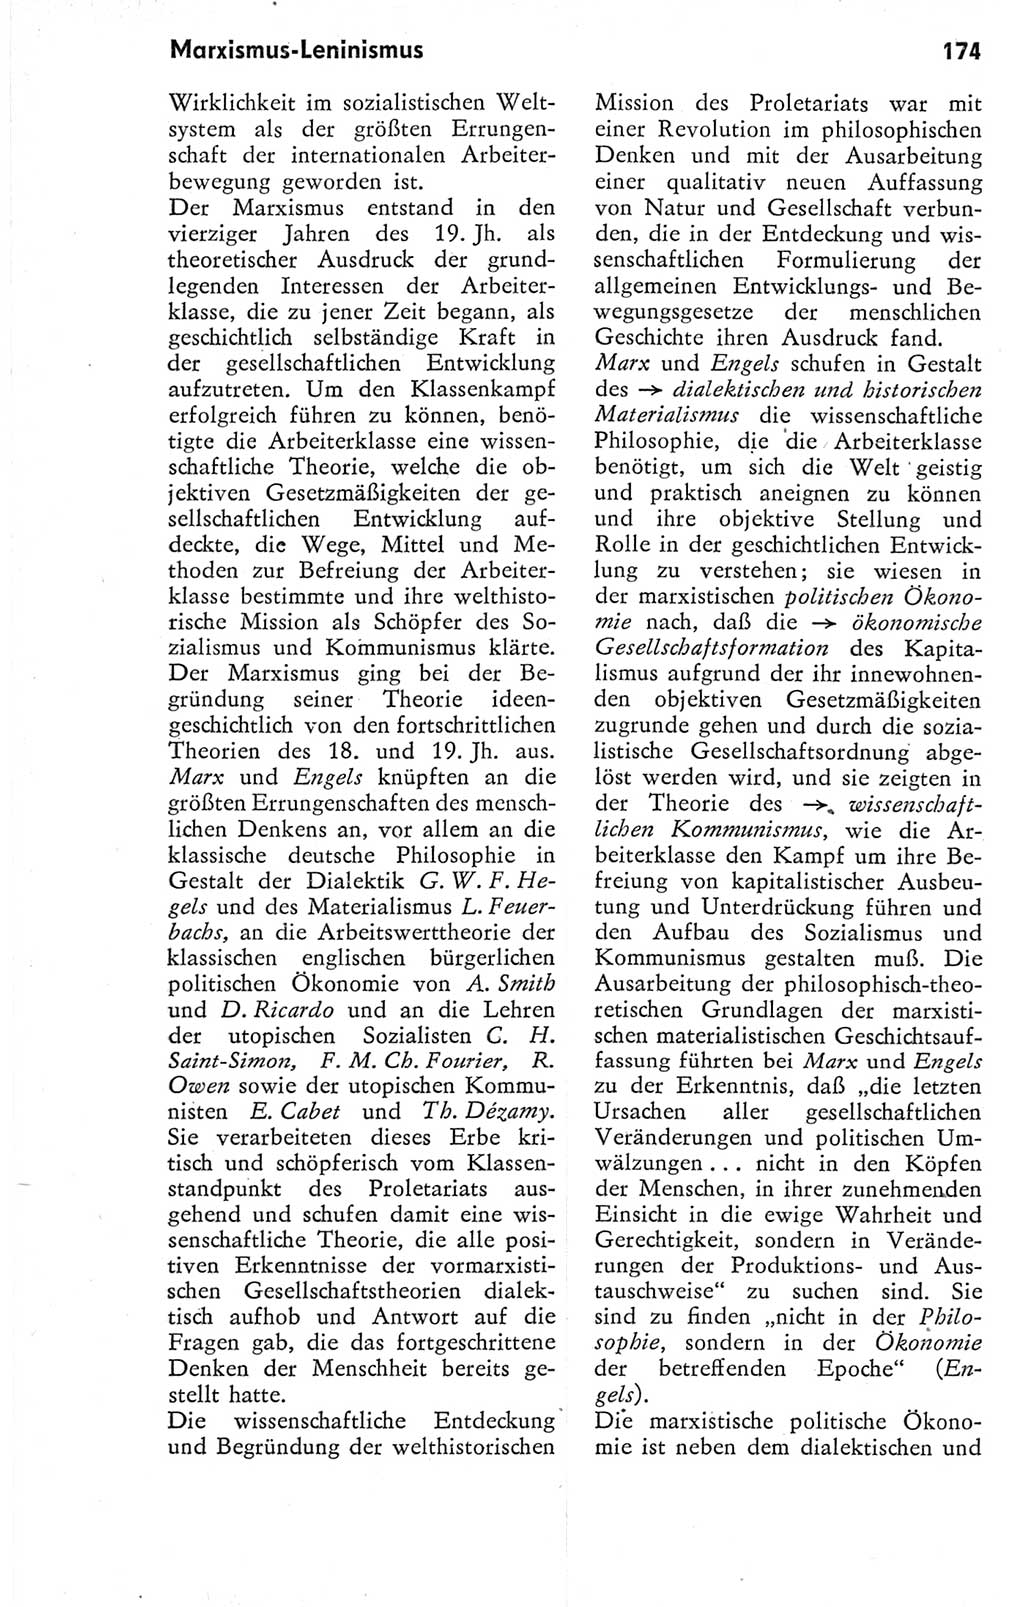 Kleines Wörterbuch der marxistisch-leninistischen Philosophie [Deutsche Demokratische Republik (DDR)] 1974, Seite 189 (Kl. Wb. ML Phil. DDR 1974, S. 189)